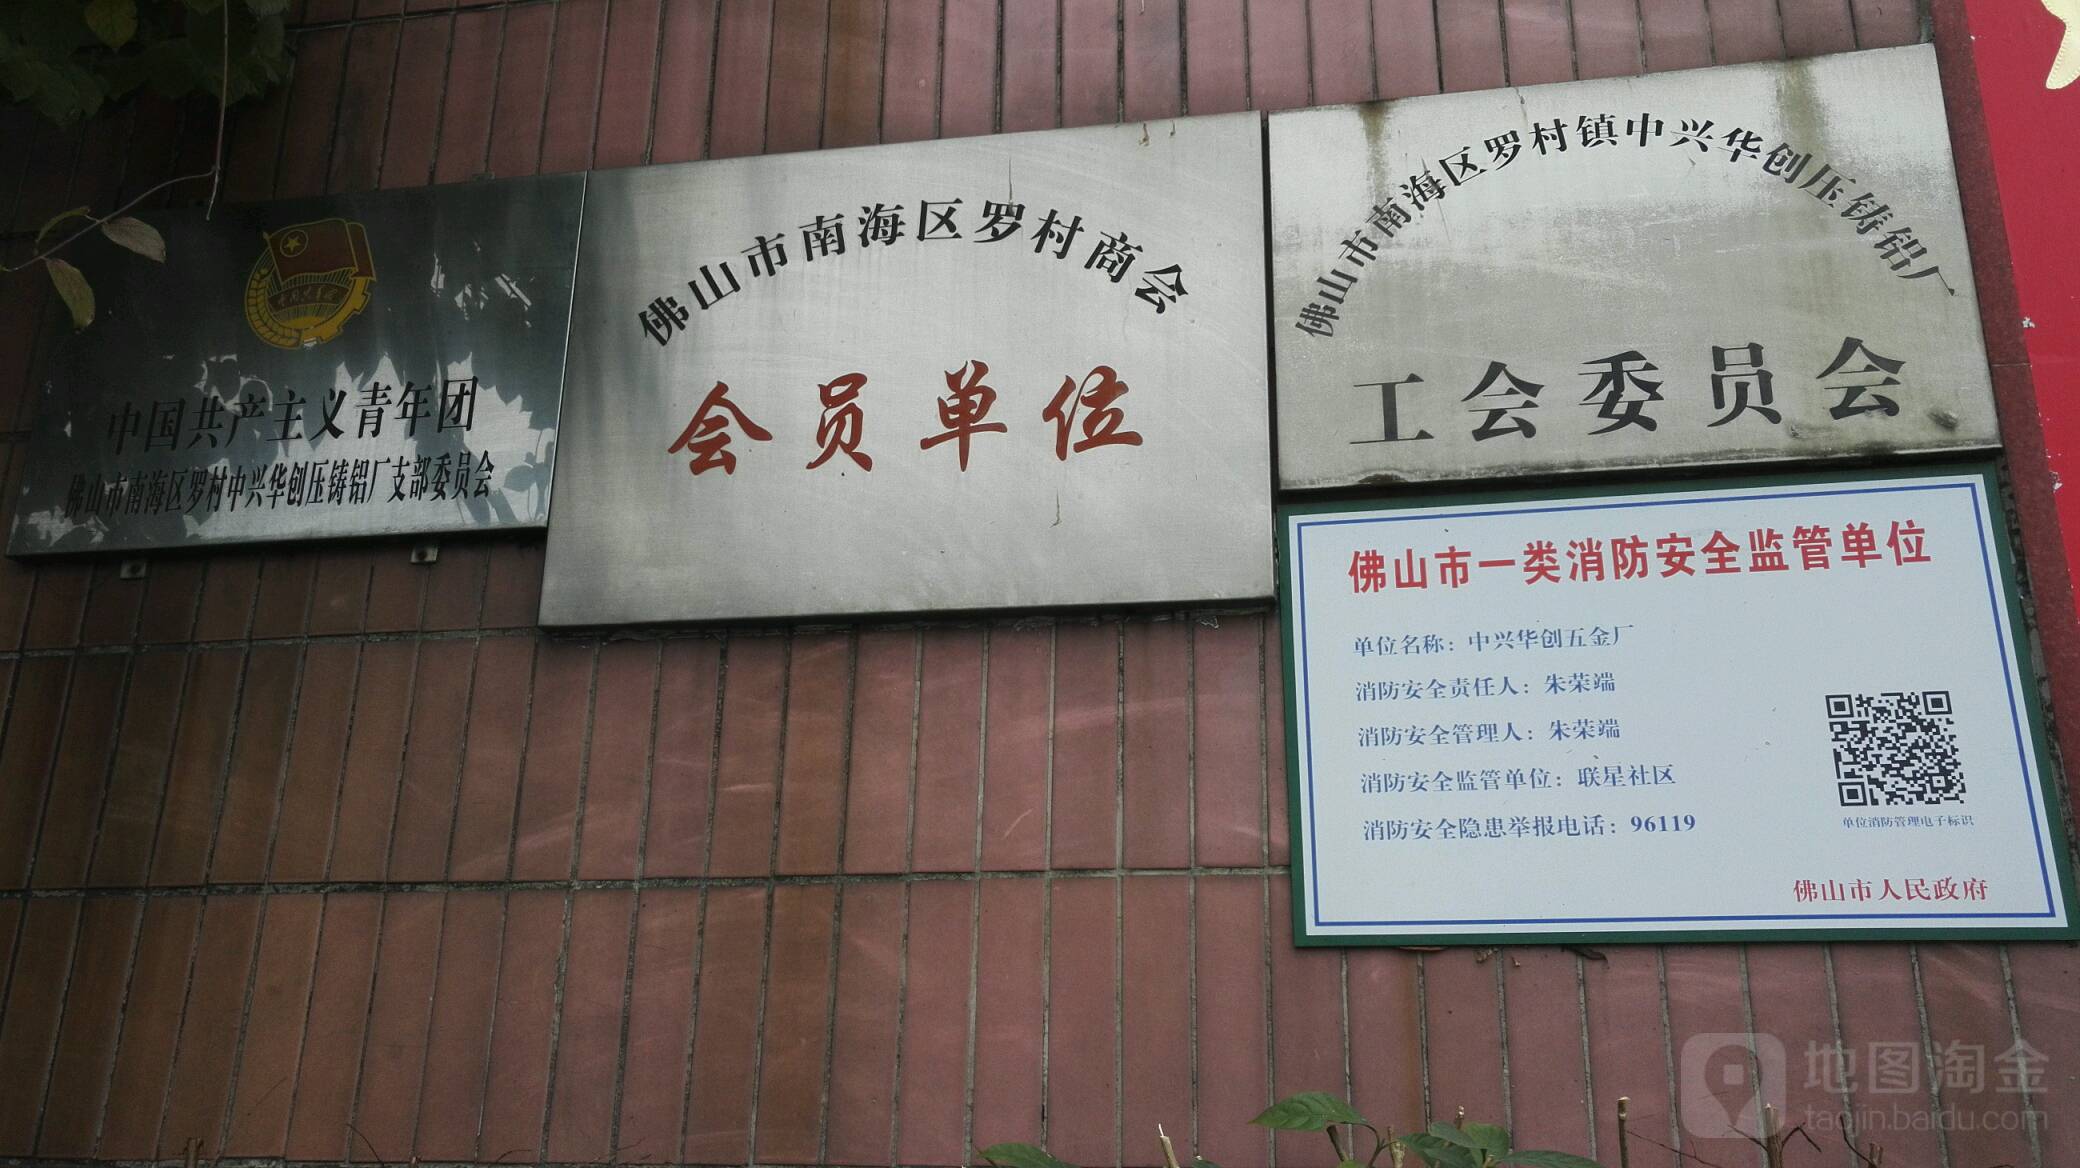 中國共產主義青年團佛山市南海區羅村中興華創壓鑄鋁廠支部委員會